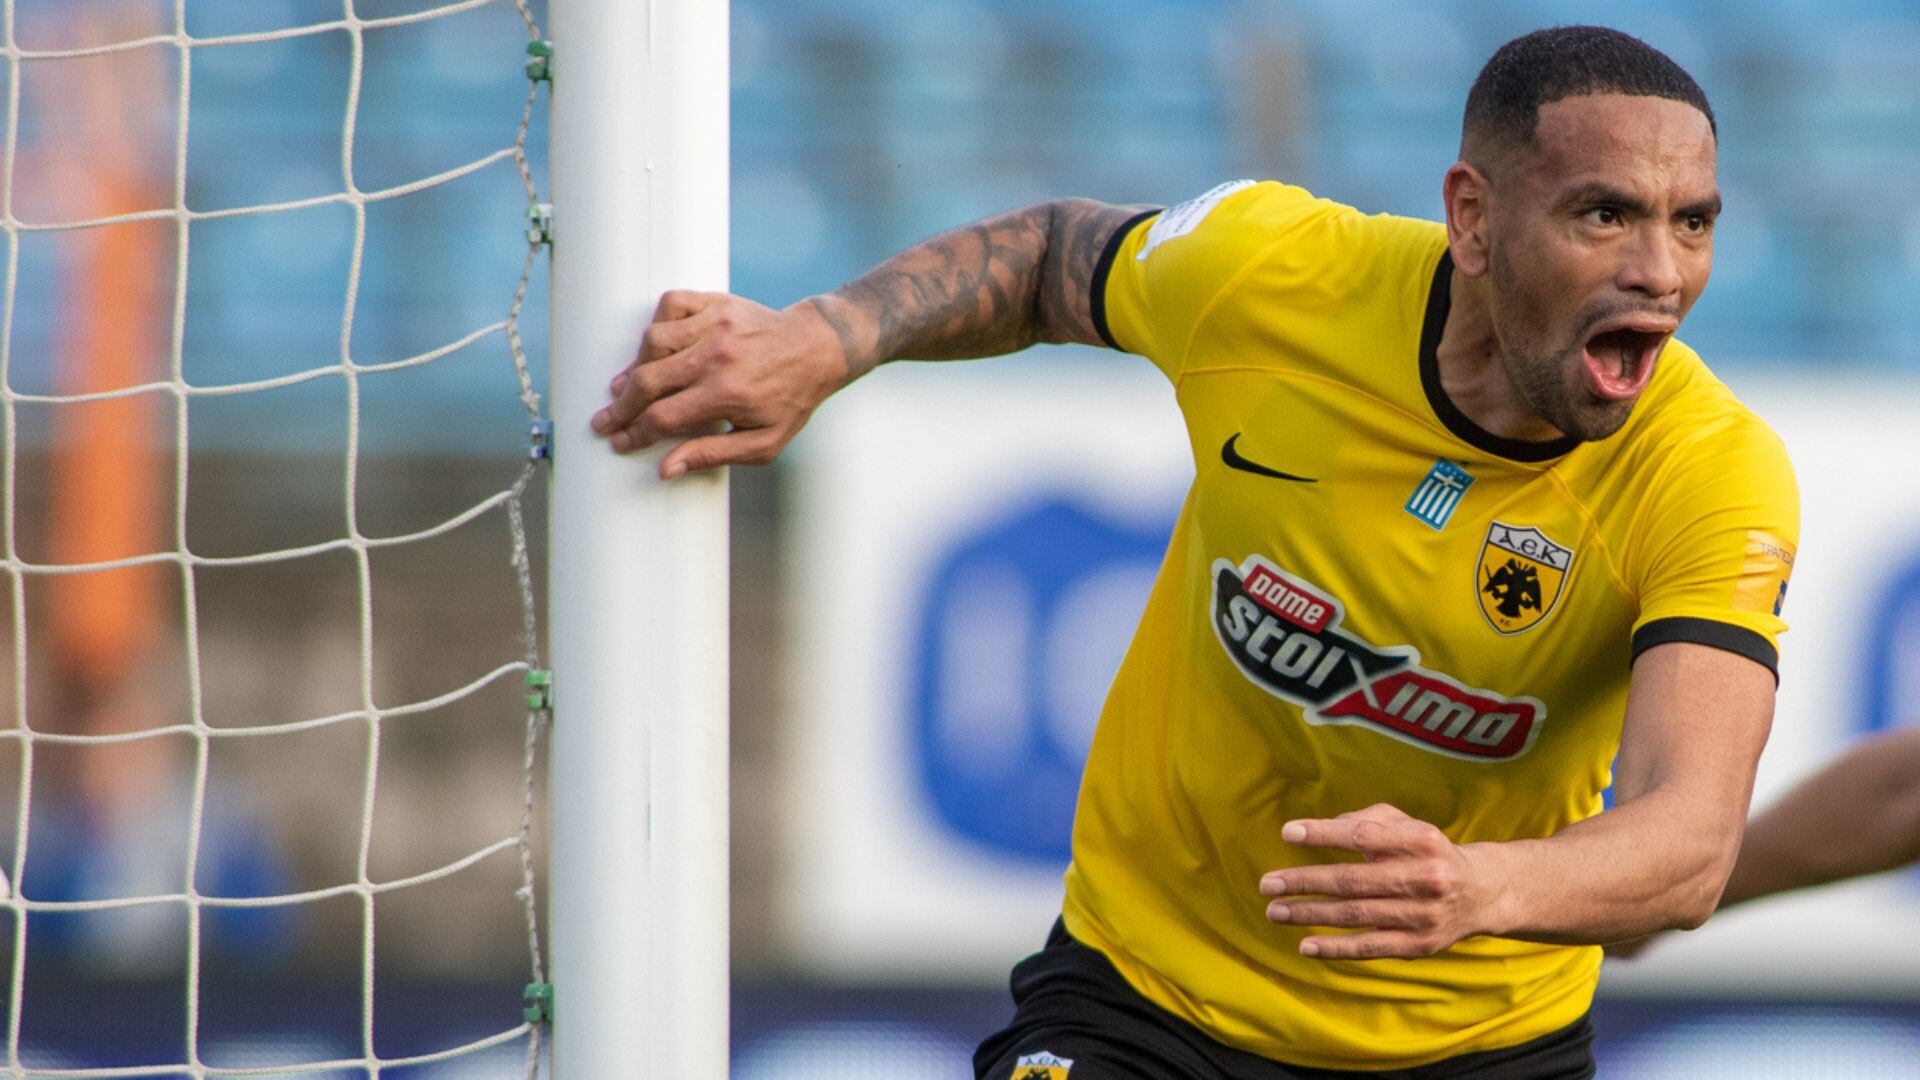 Alexander Callens marcó su segundo gol en la temporada con AEK. - Crédito: @Super_League_GR